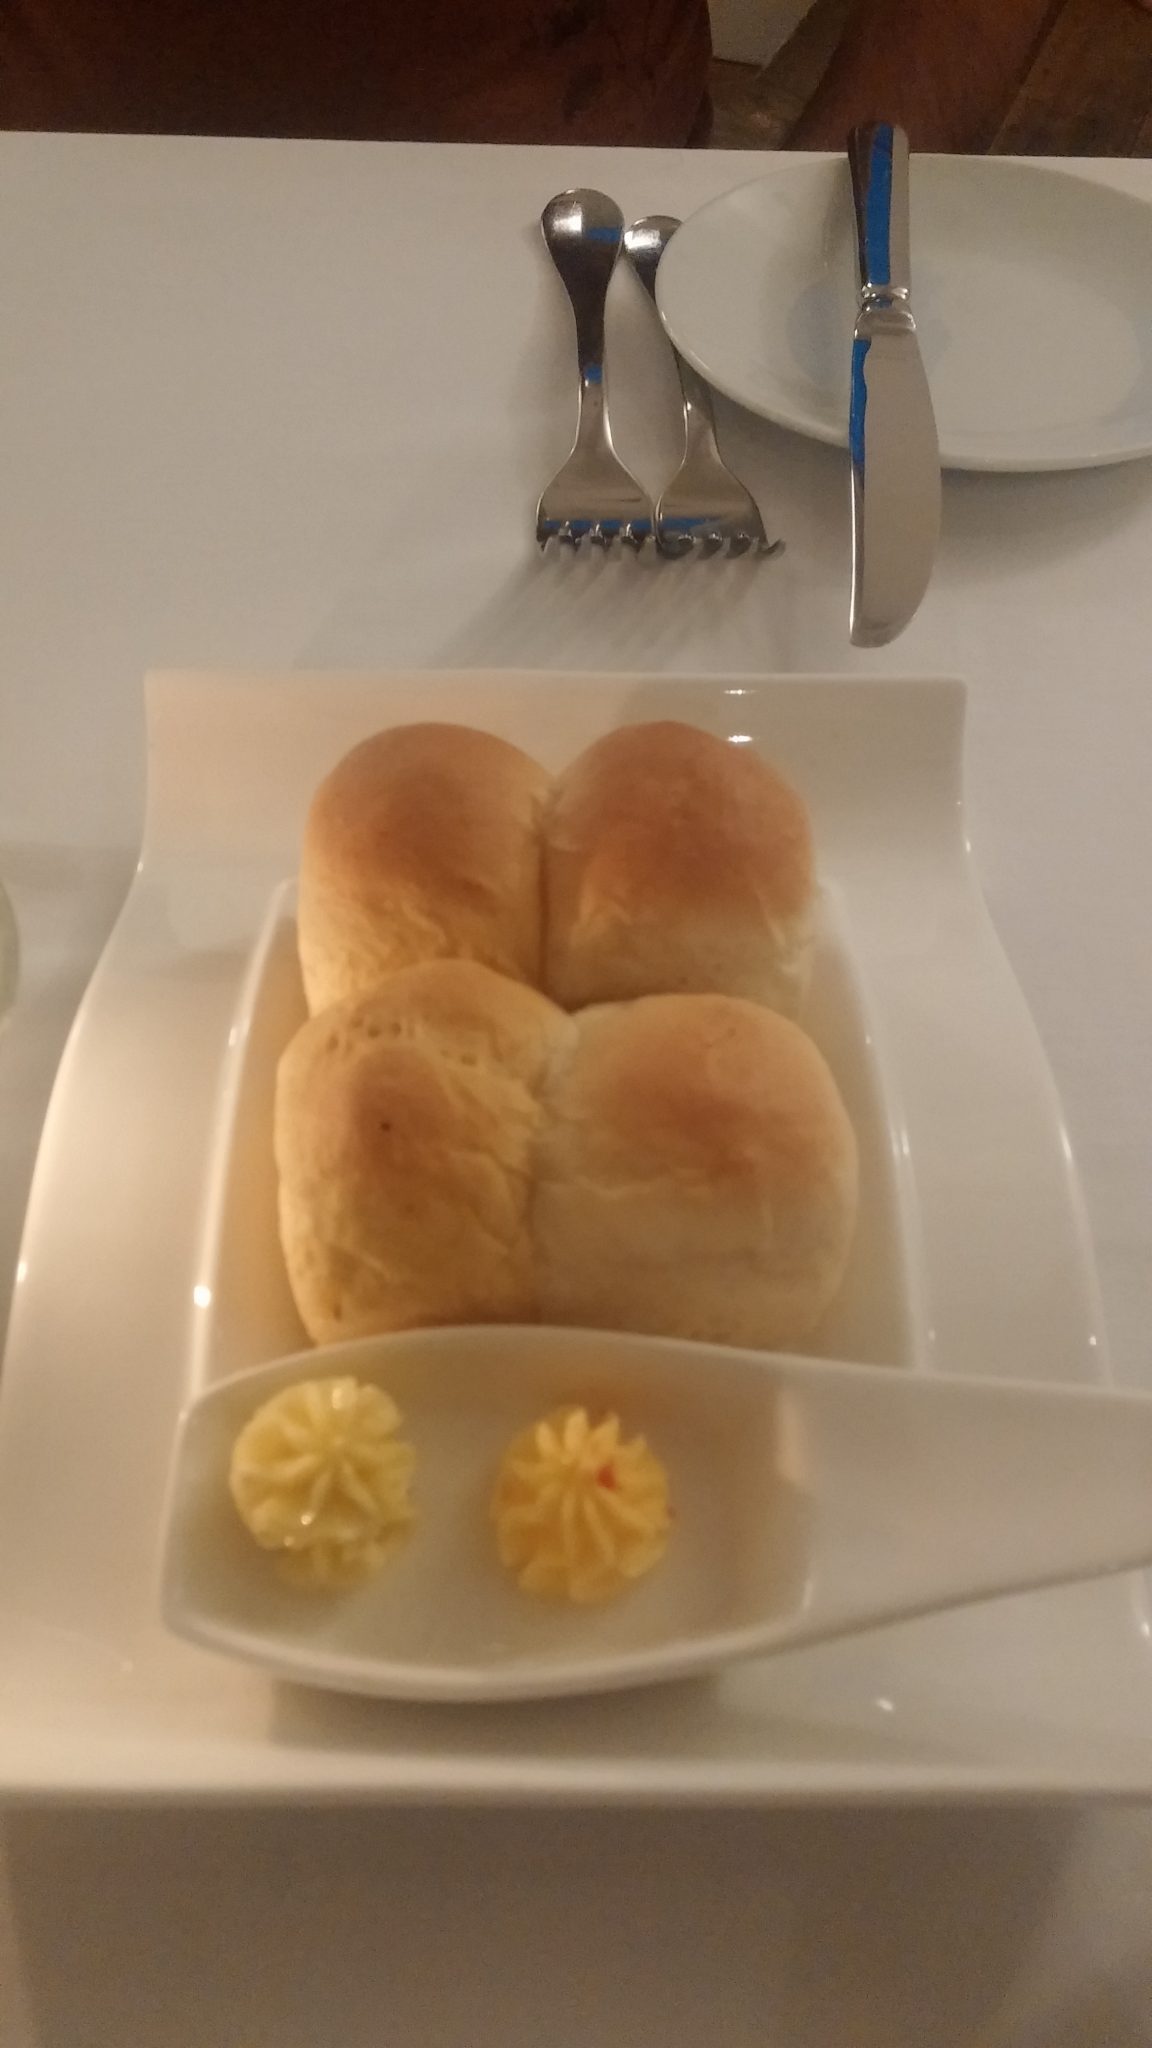 Oven-warm bread